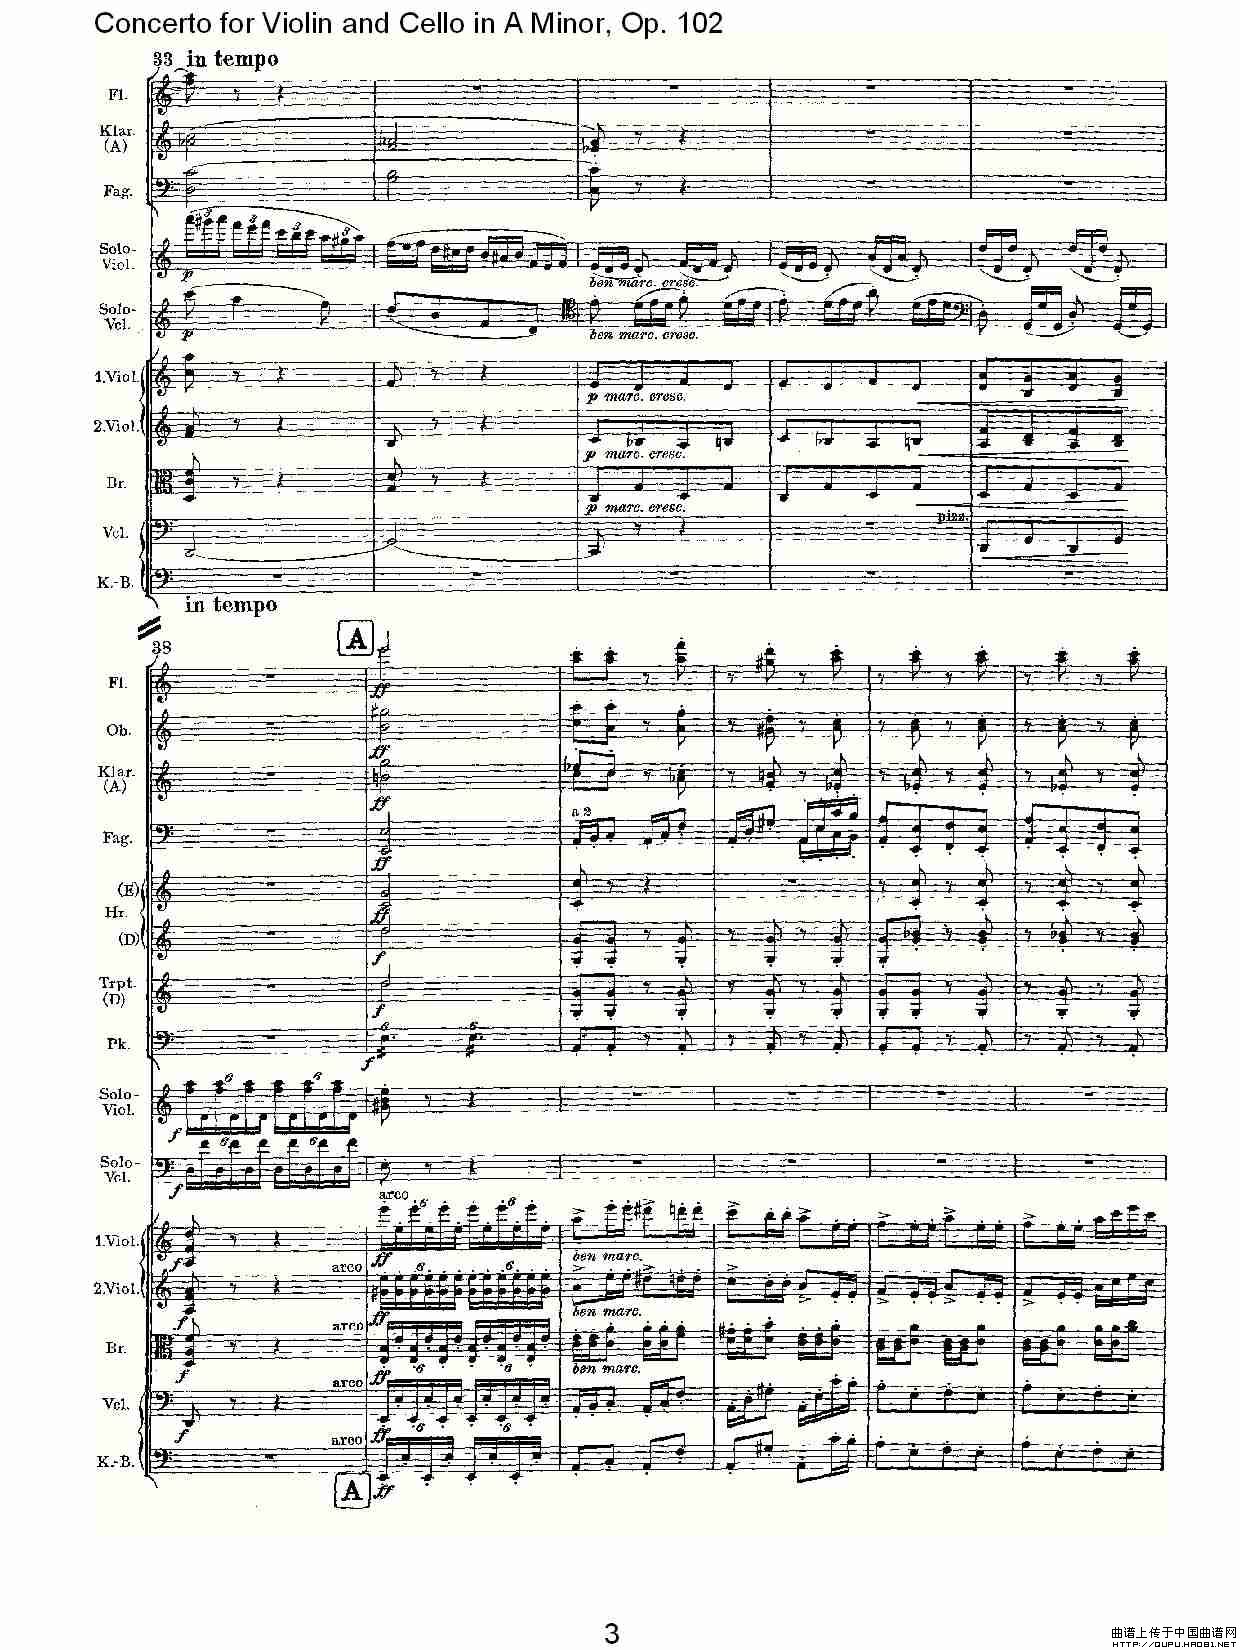 A小调小提琴与大提琴协奏曲, Op.102第三乐章